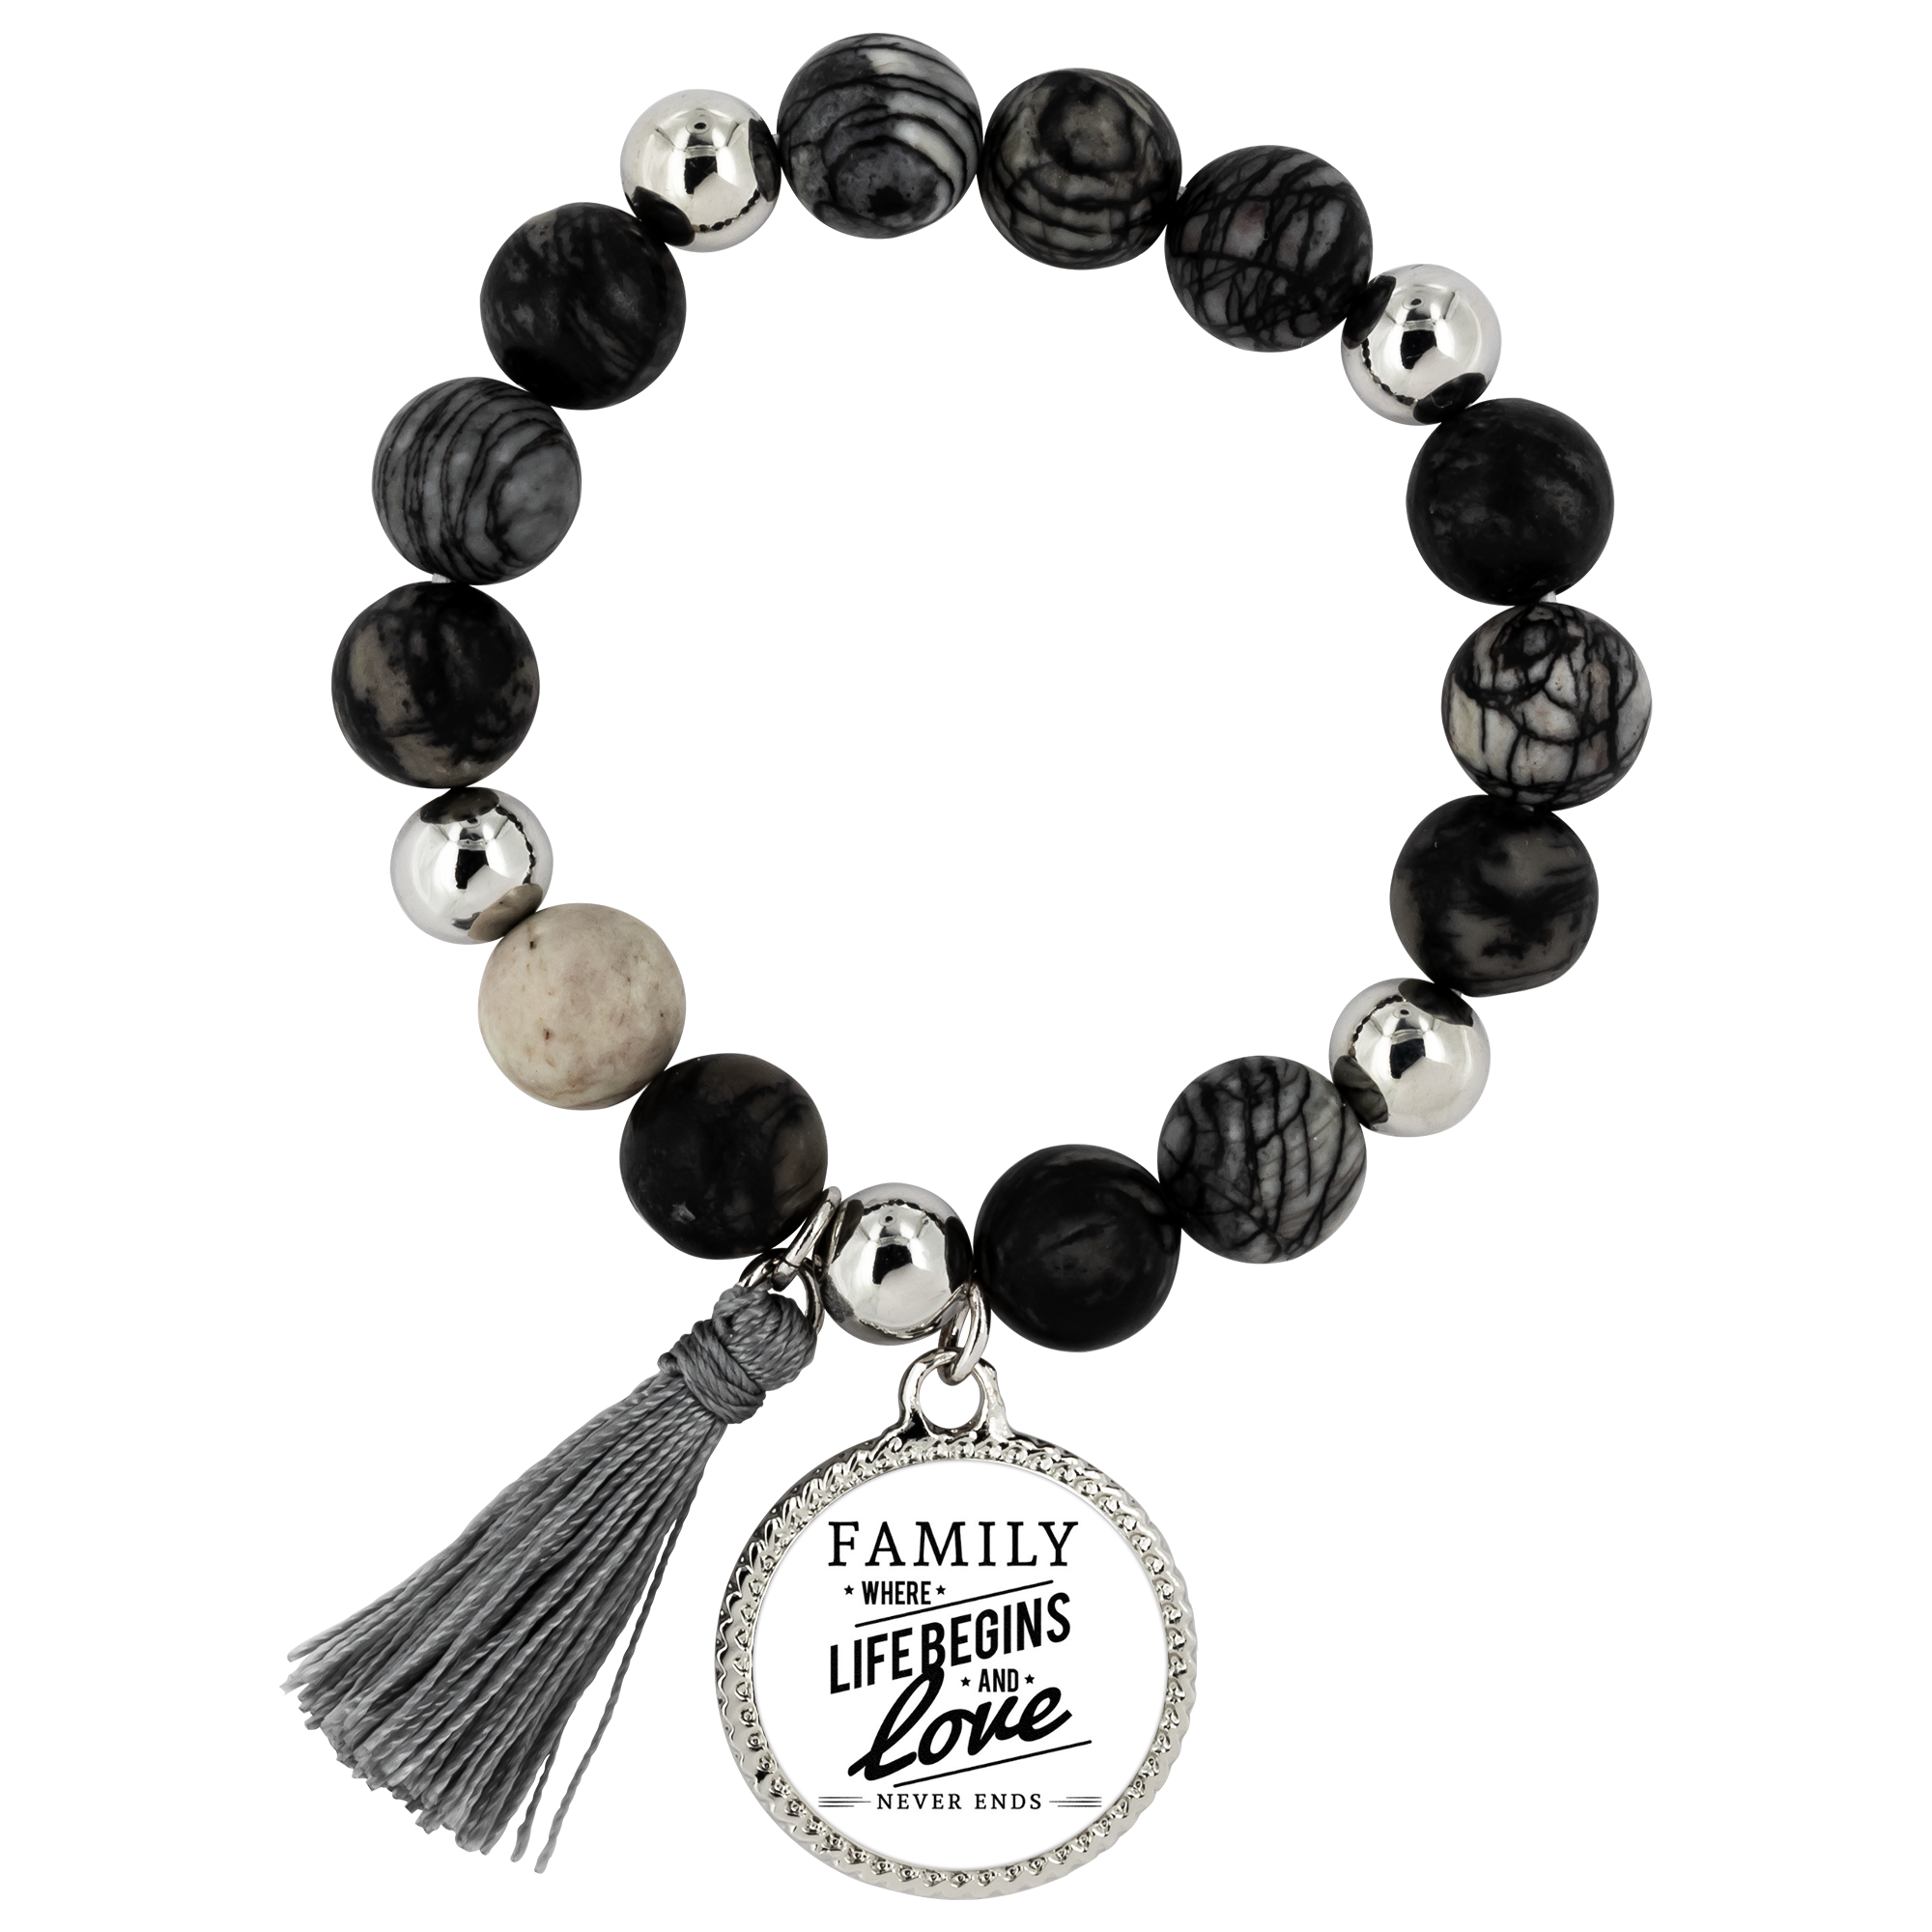 The Onyx Love of Family Bracelet